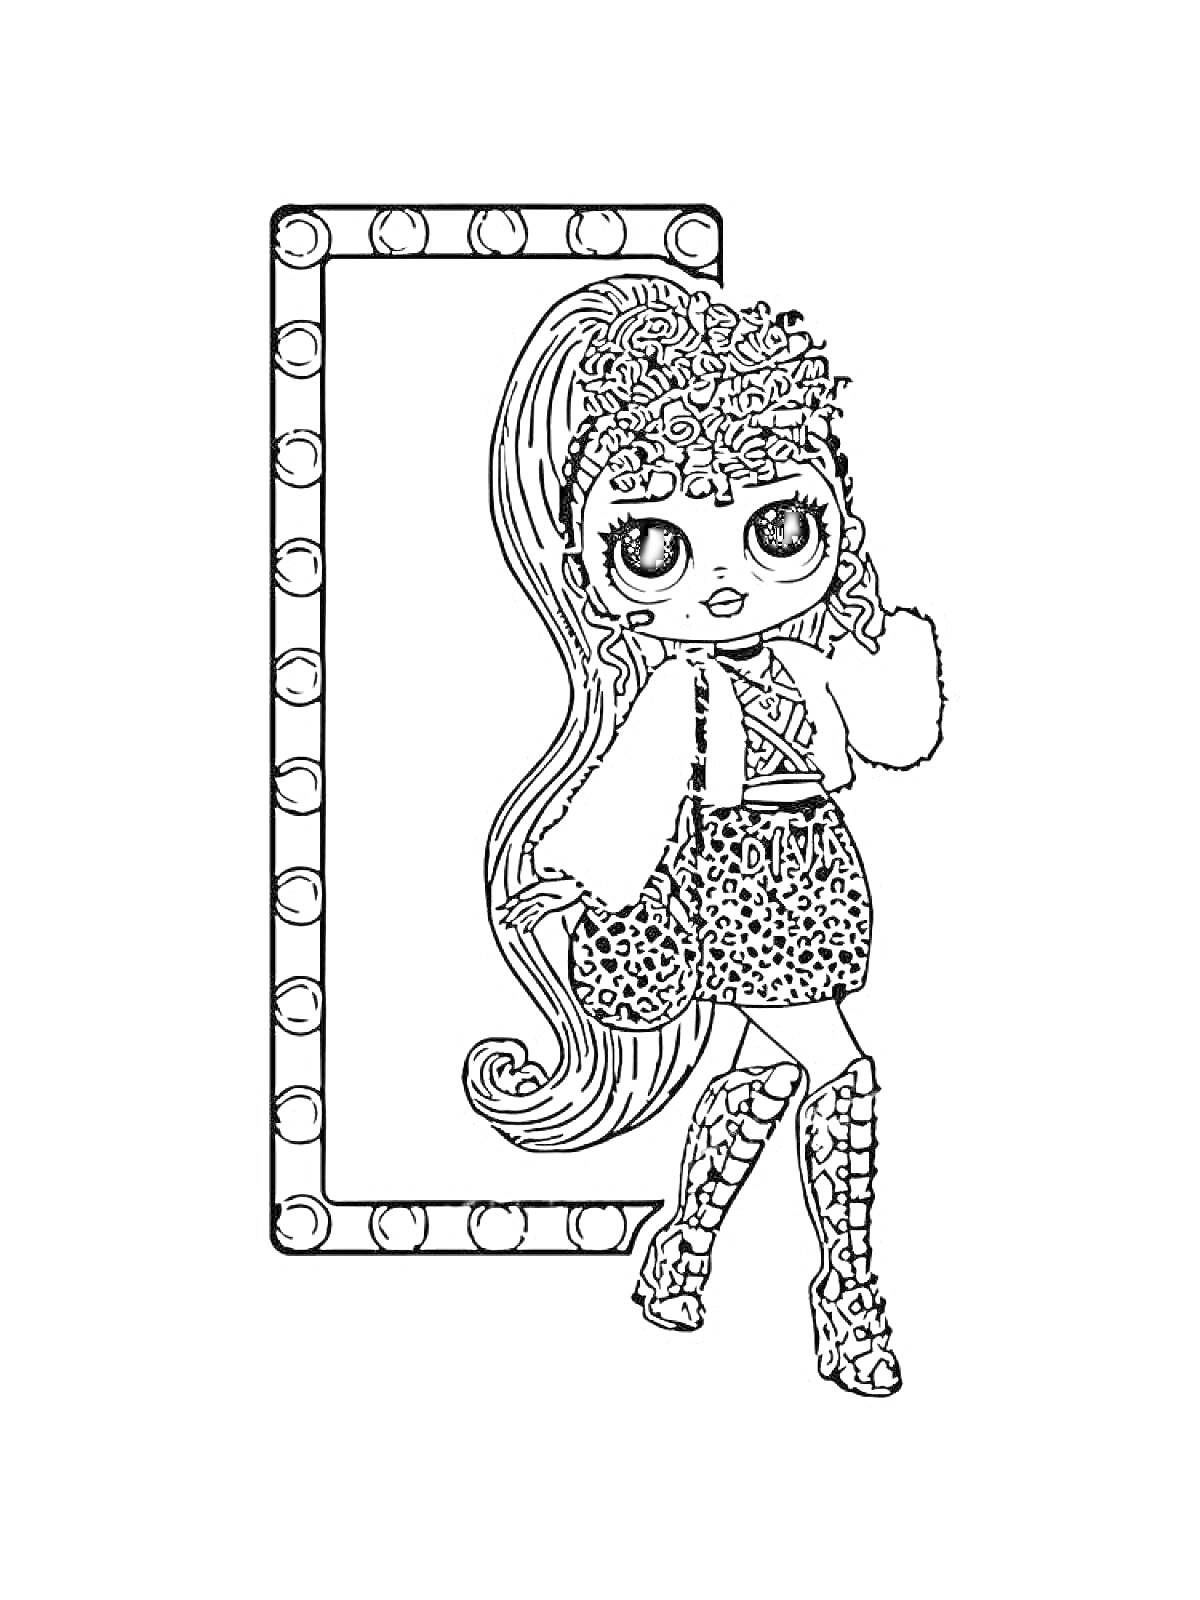 Кукла ЛОЛ с длинными волосами в леопардовой юбке и высоких ботинках на фоне зеркала с лампочками